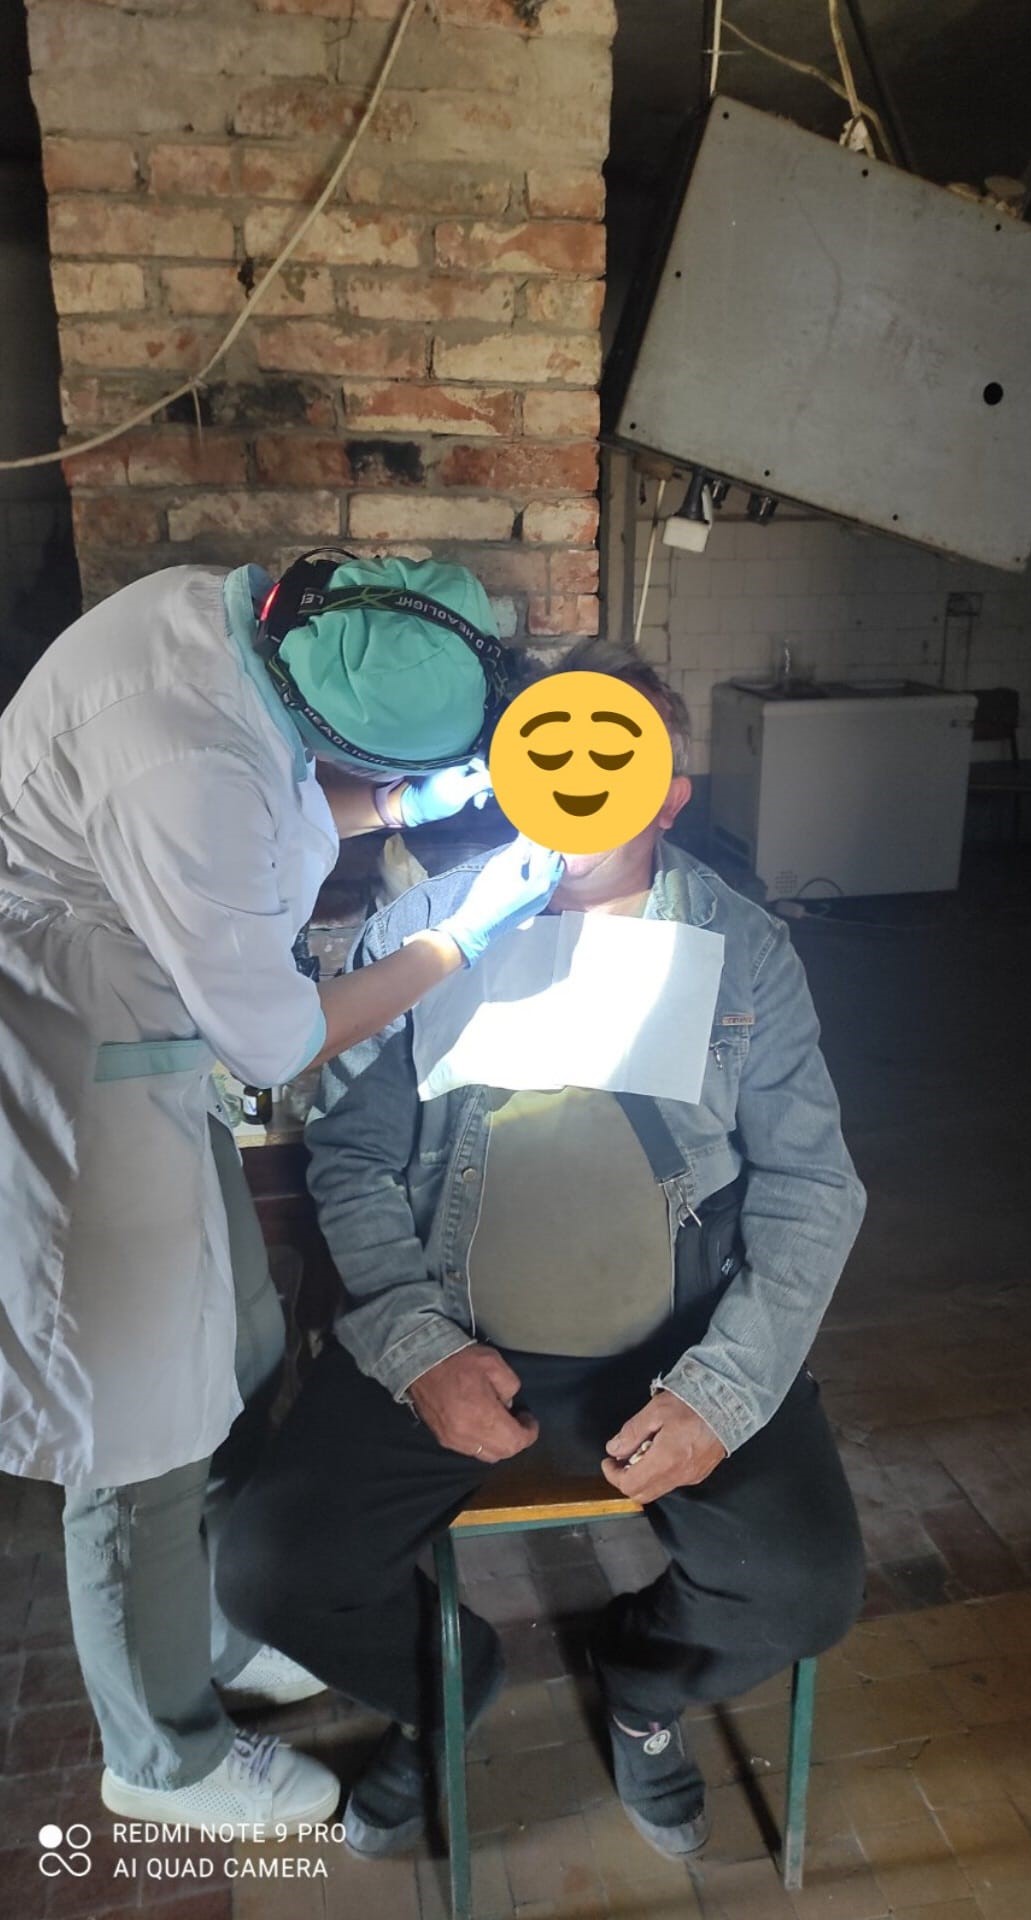 стомаолог лікує зуби місцевим у Сіверську